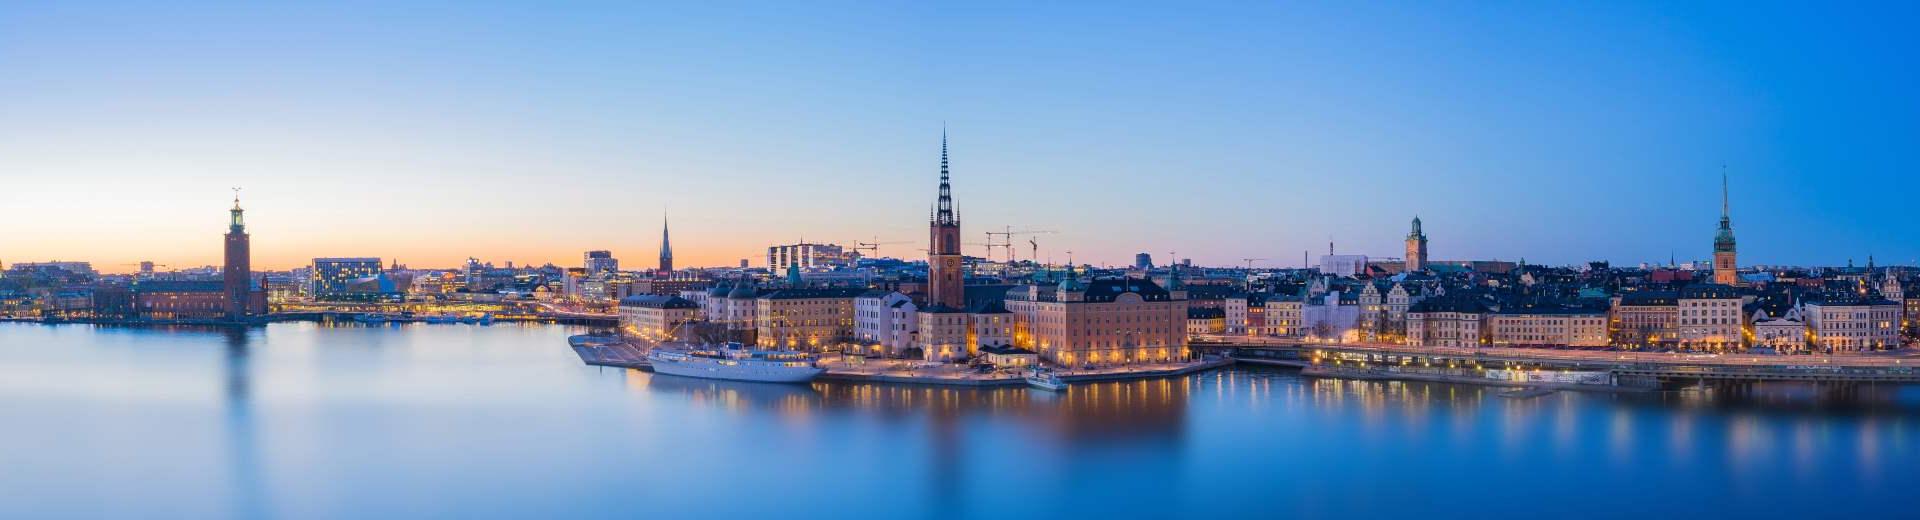 Ferienwohnung Stockholm – Die schwedische Hauptstadt entdecken!  - EuroRelais